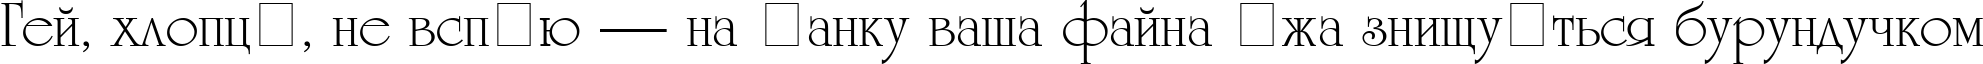 Пример написания шрифтом UniCyrillic текста на украинском